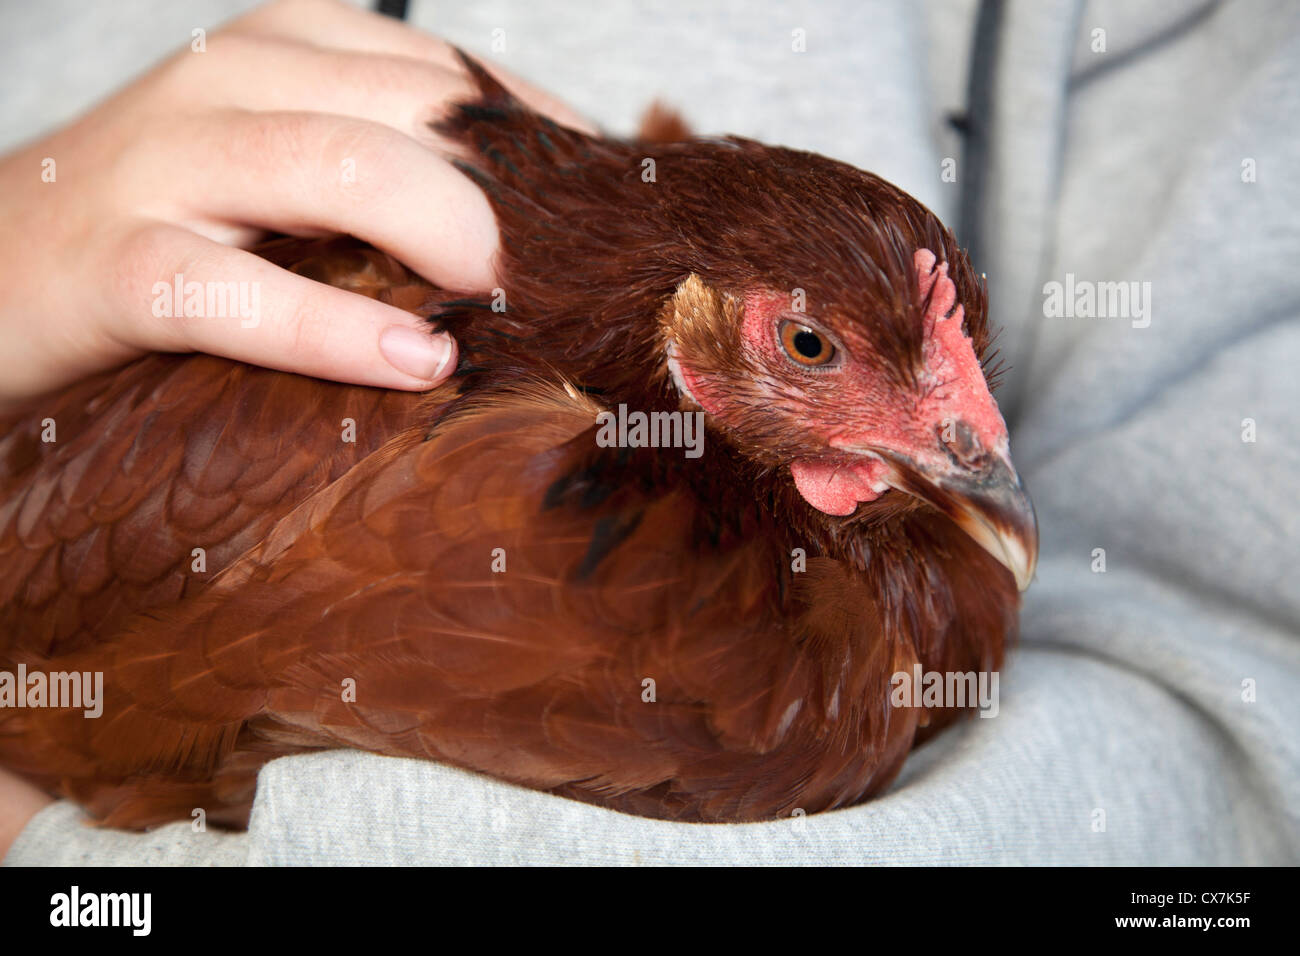 Farm pet, Red Fowl (Gallus Gallus) Stock Photo